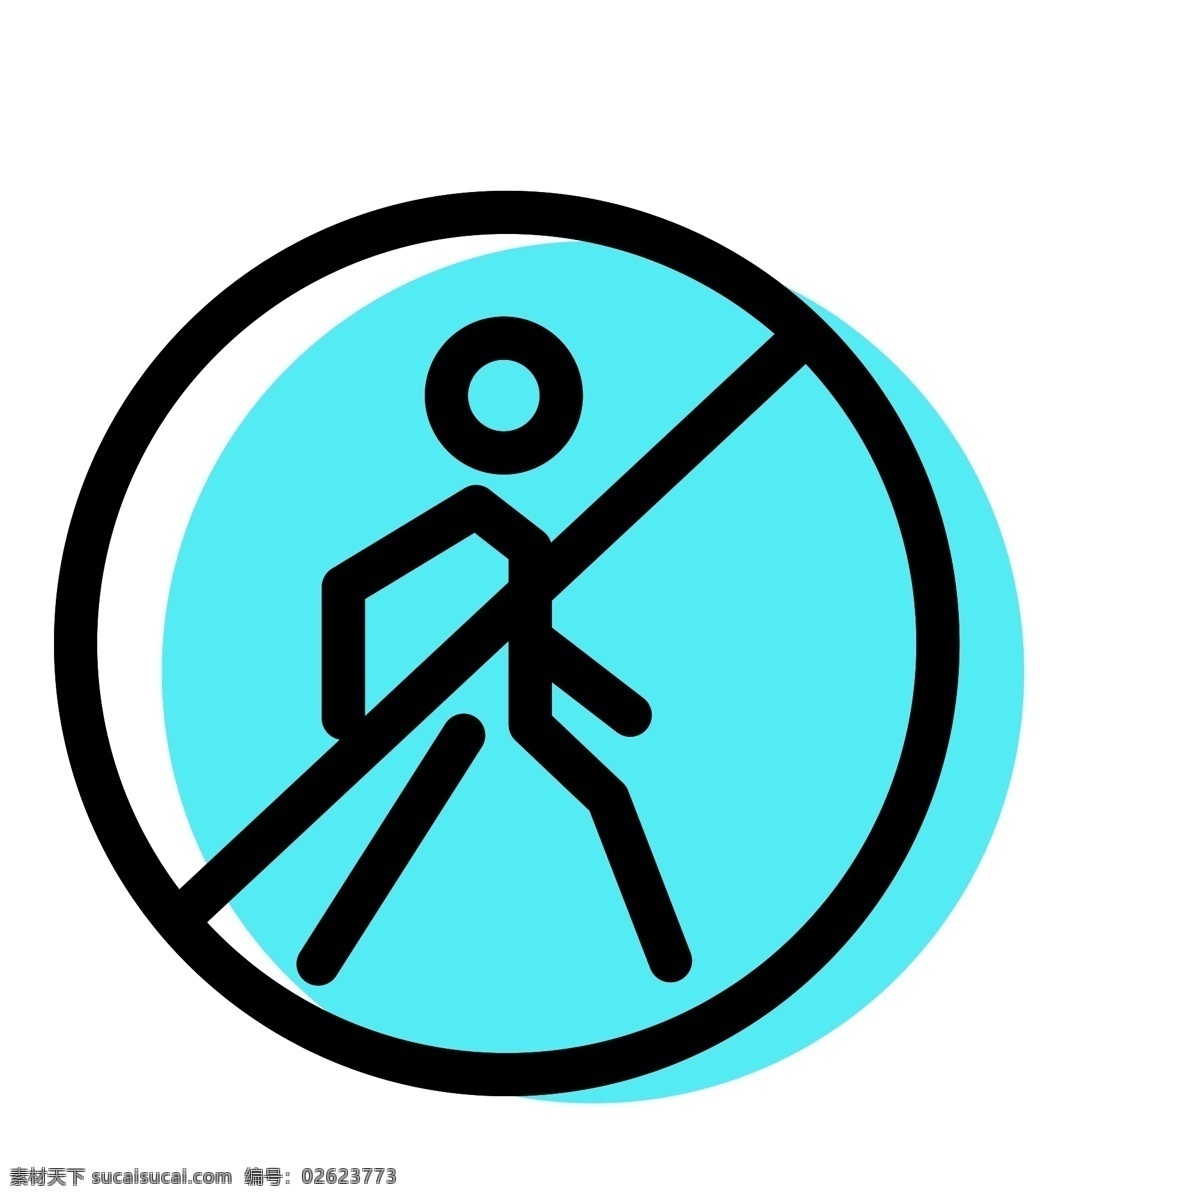 禁止行人 禁止步行 扁平化ui ui图标 手机图标 界面ui 网页ui h5图标